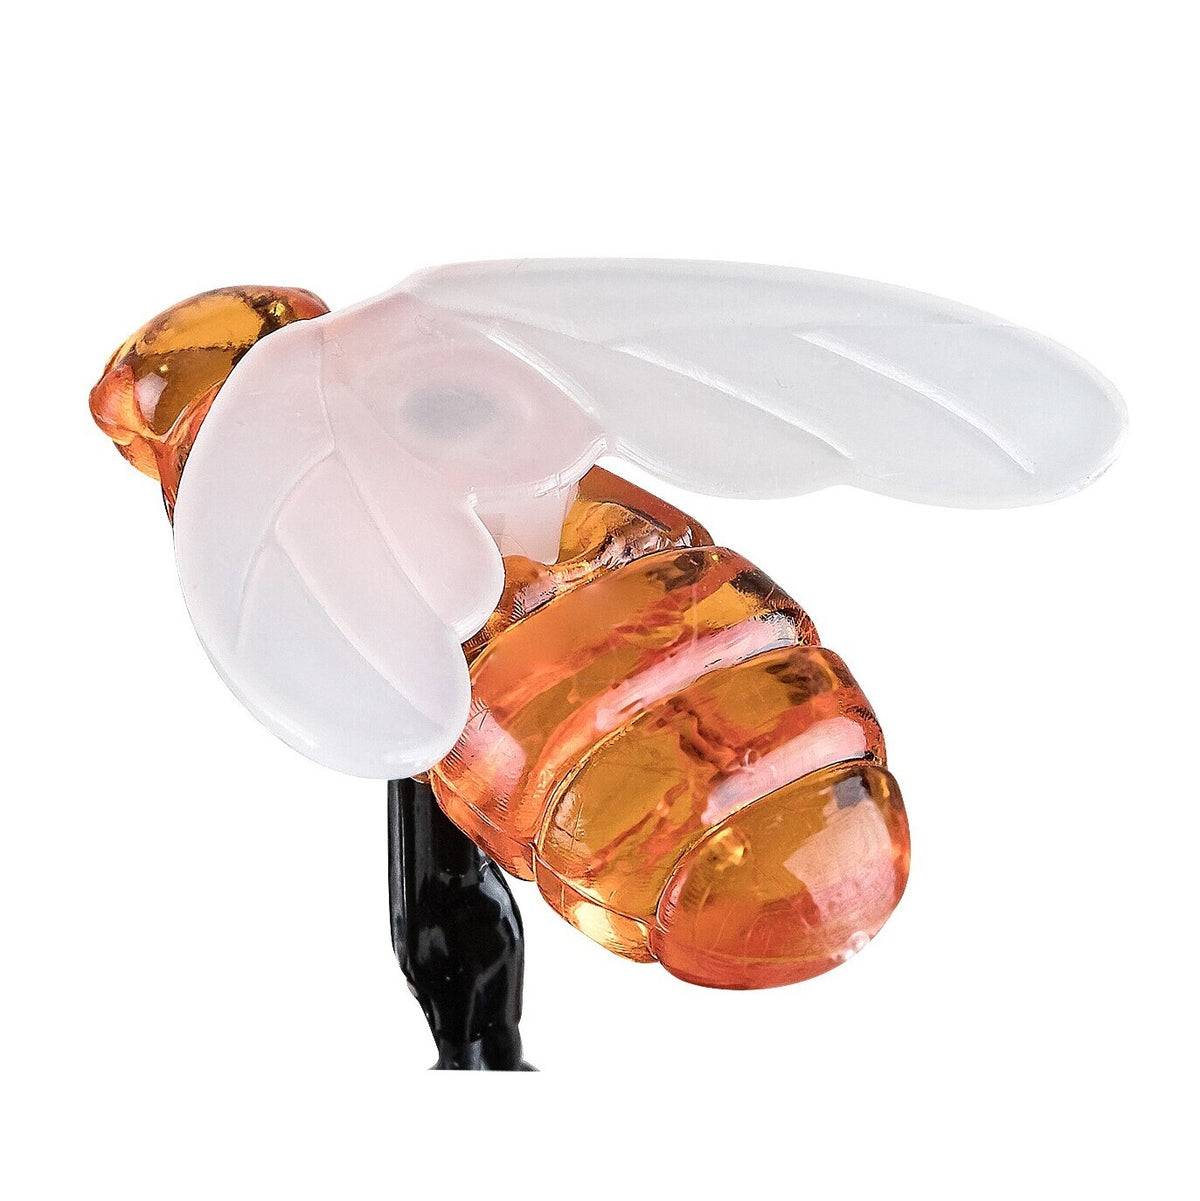 LED venkovní solární svítidlo Rabalux 77002 Bobus, 20 včelek